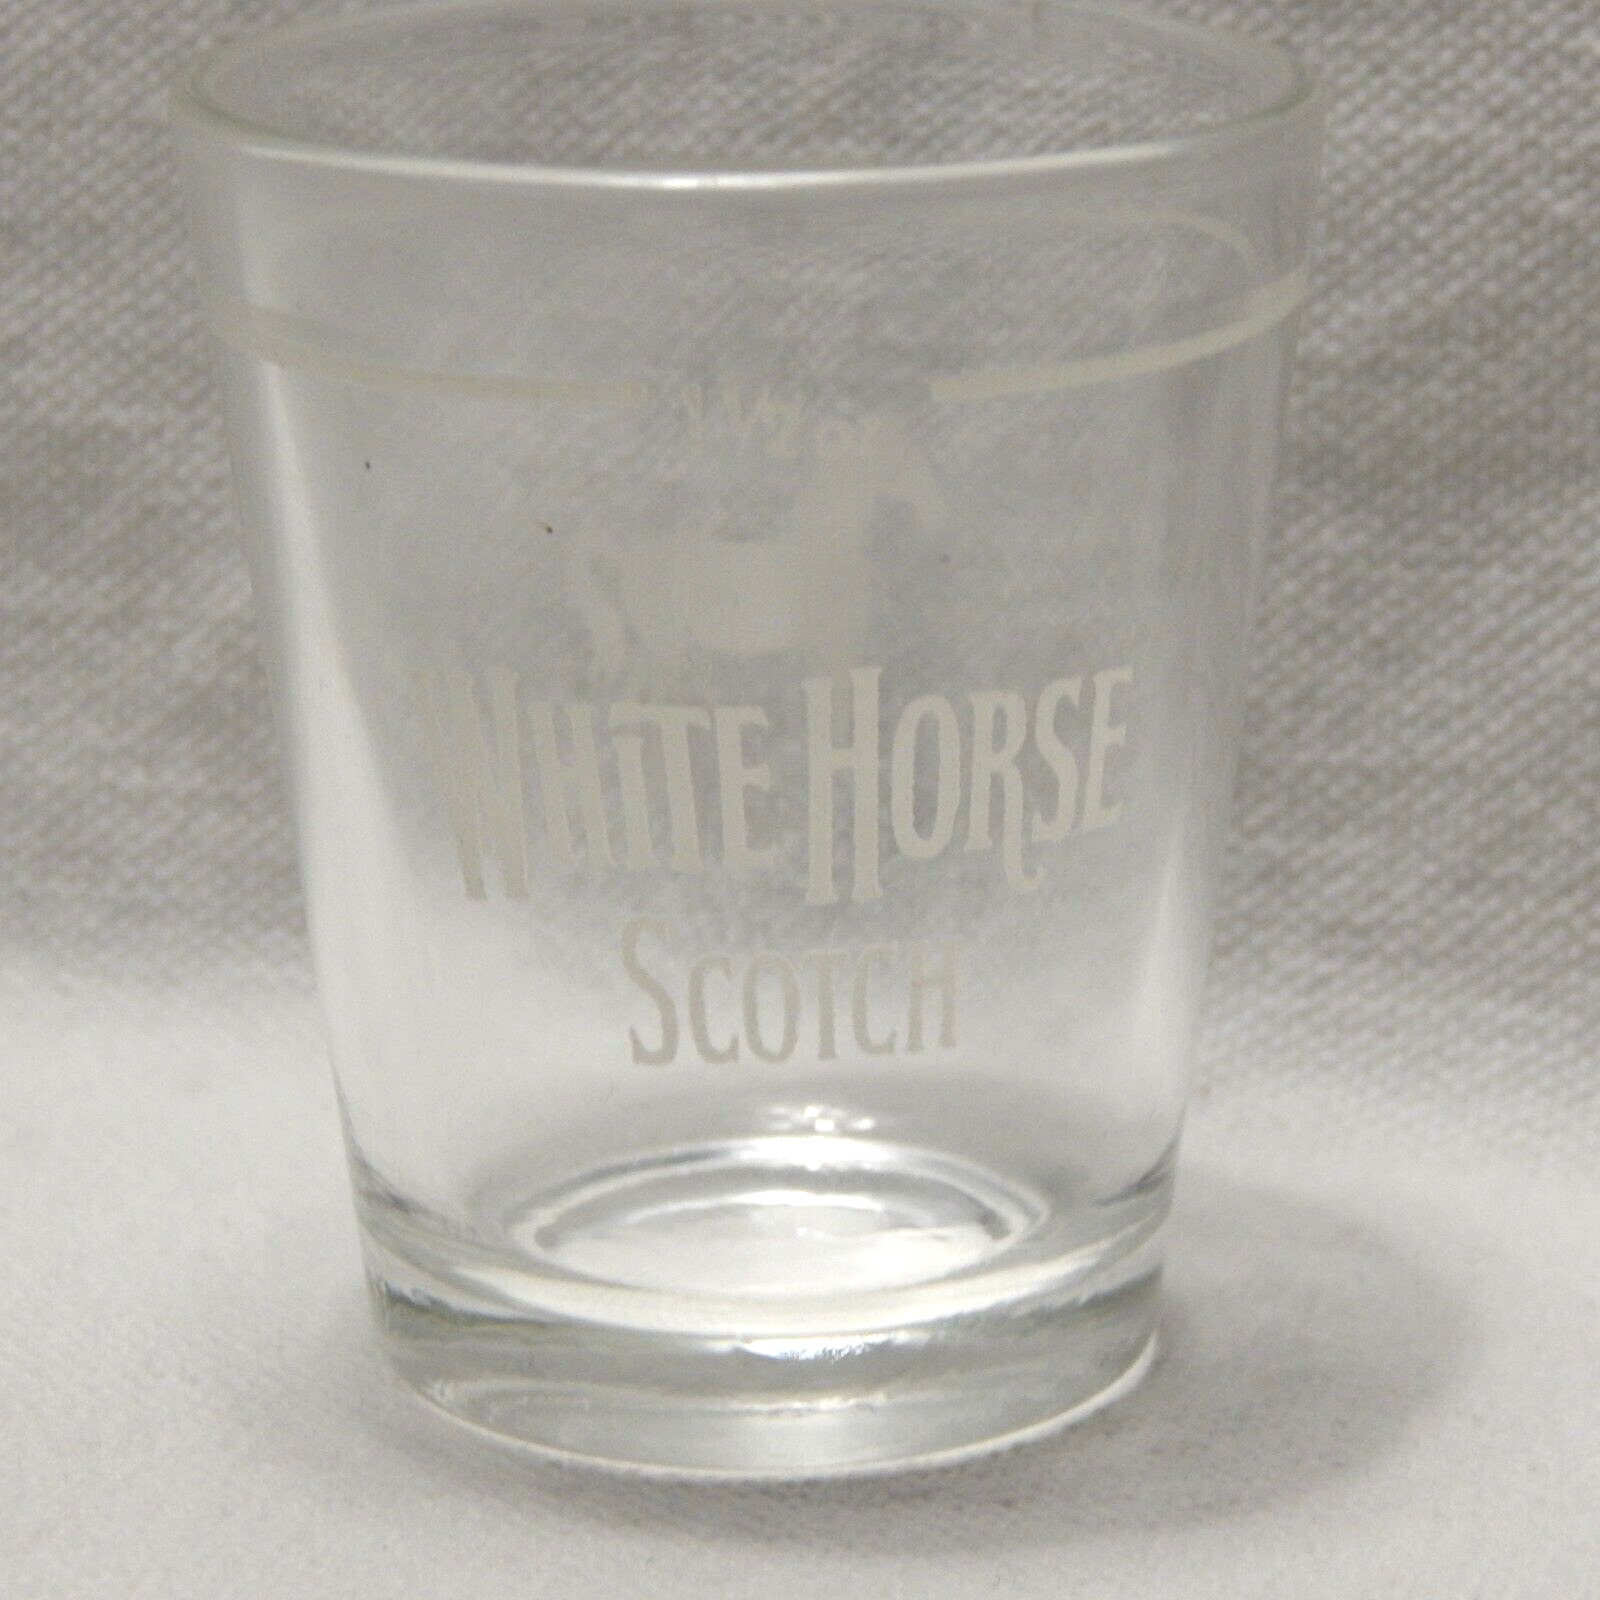 White Horse Scotch (A)